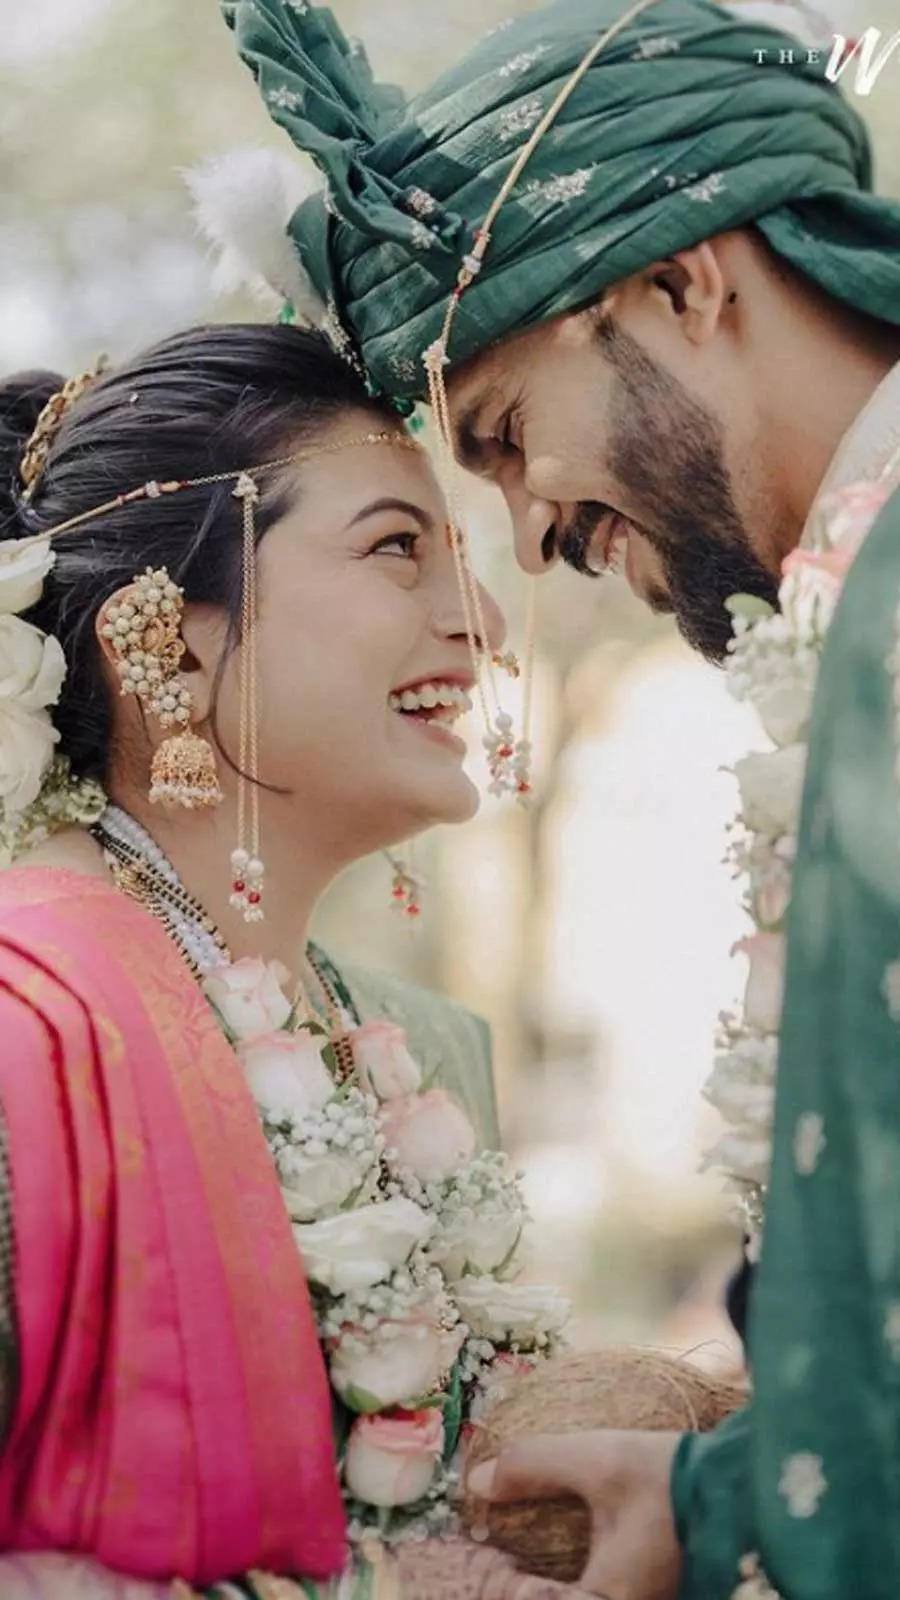 Ruturaj Gaikwad Wedding Pictures: CSK star Ruturaj Gaikwad marries ...